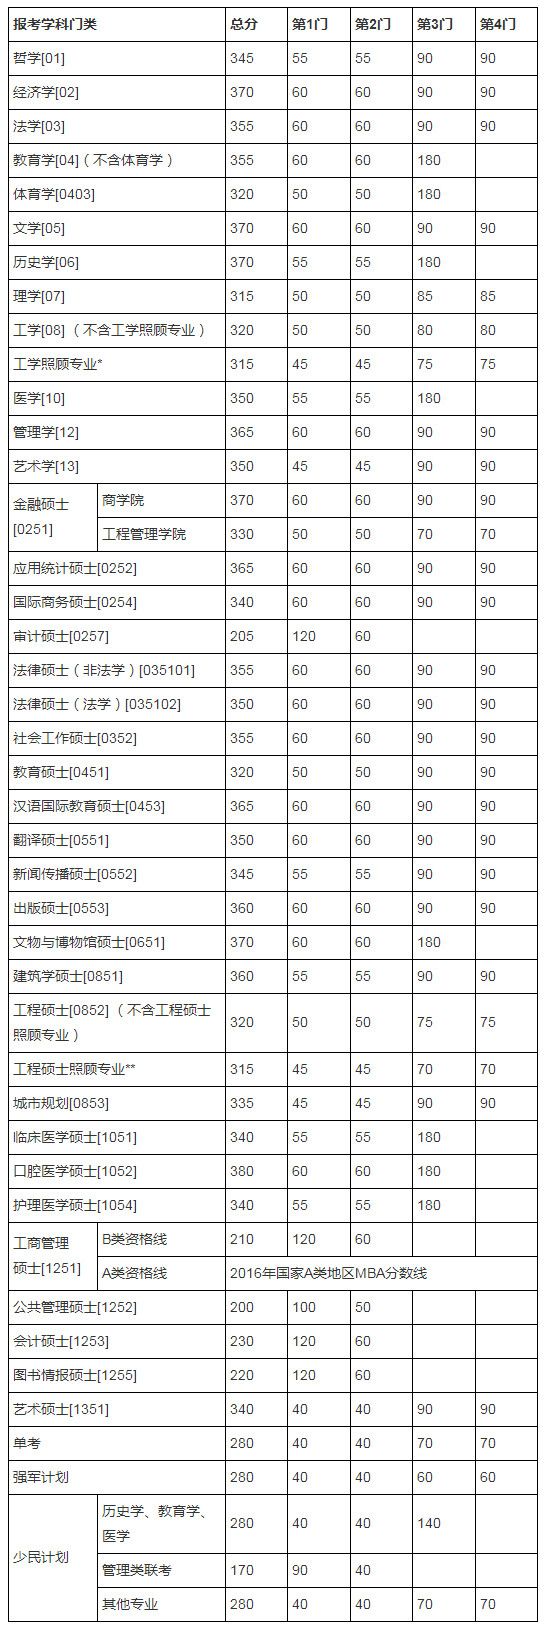 南京大学2016考研分数线